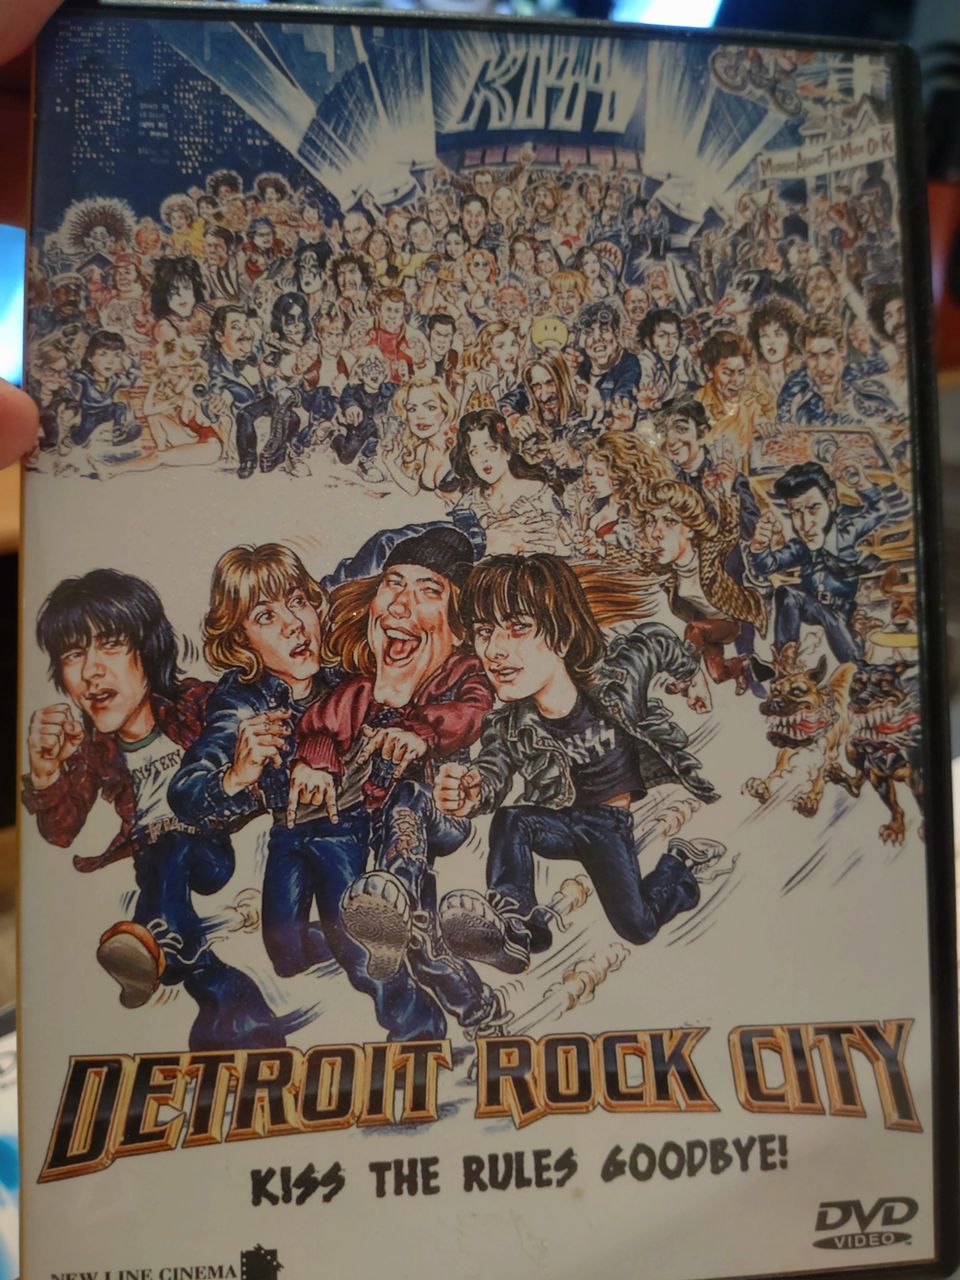 Detroit rock city